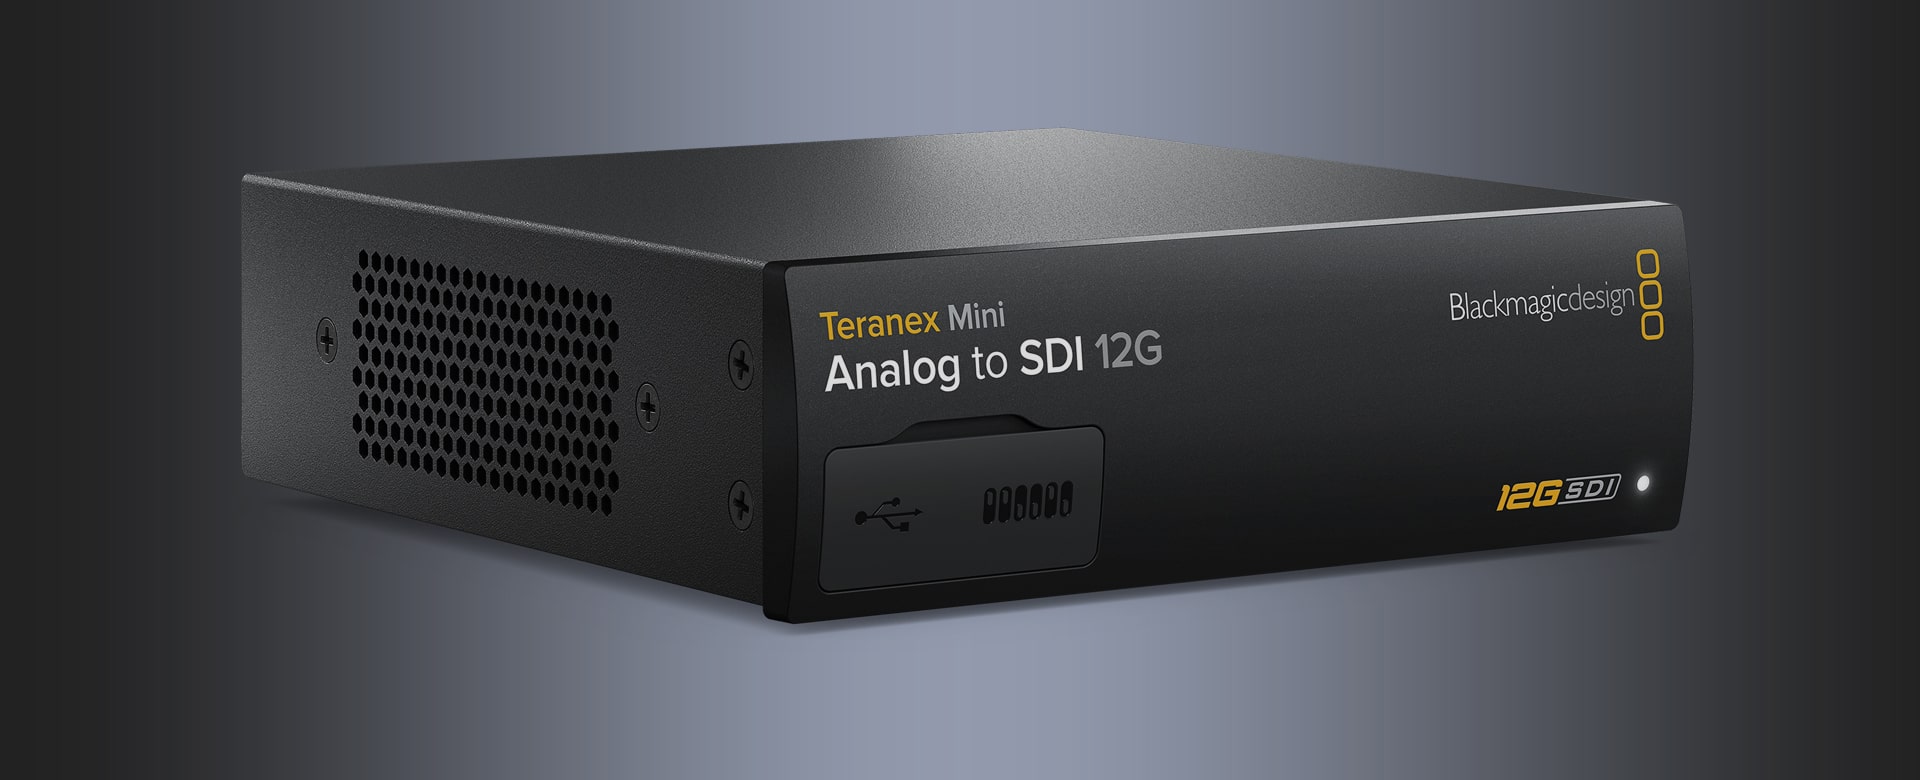 Teranex Mini Analog to SDI 12G